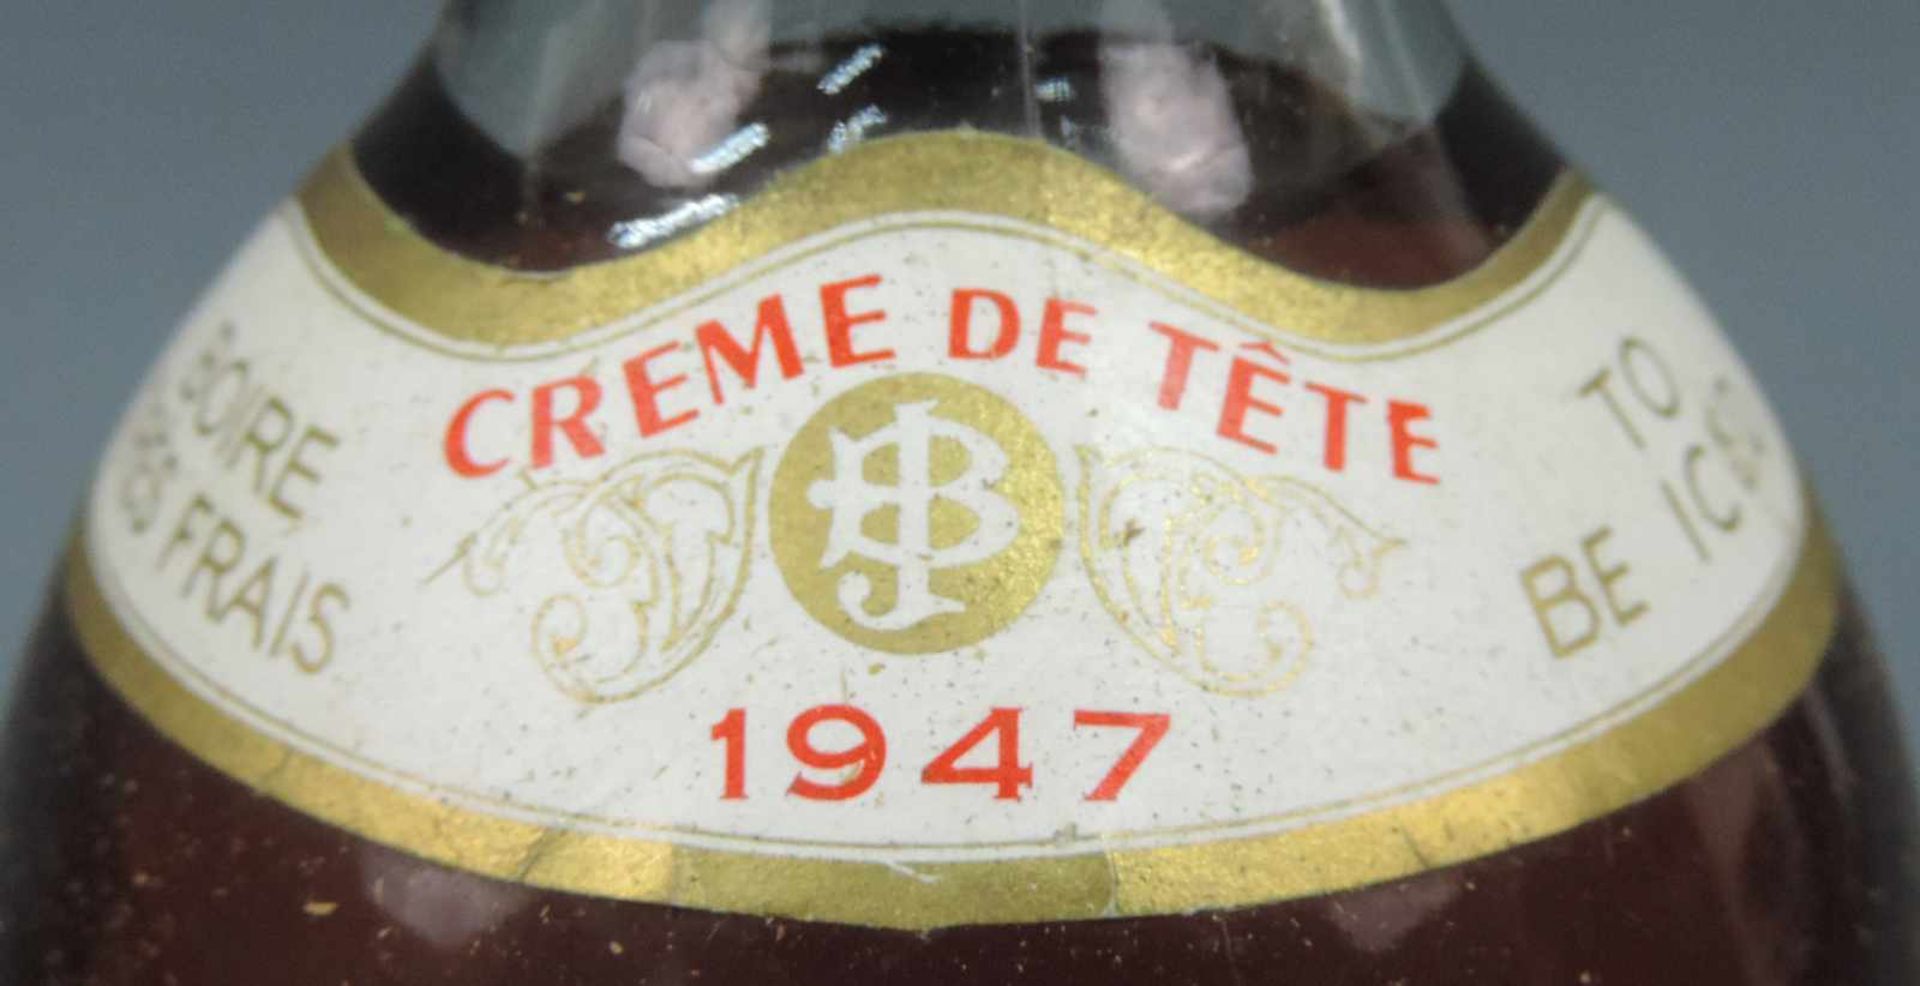 1947 Château Caillou, Creme de Tête. Barsac, AC. Grand Cru Classé. Eine ganze Flasche. Bordeaux, - Bild 5 aus 6